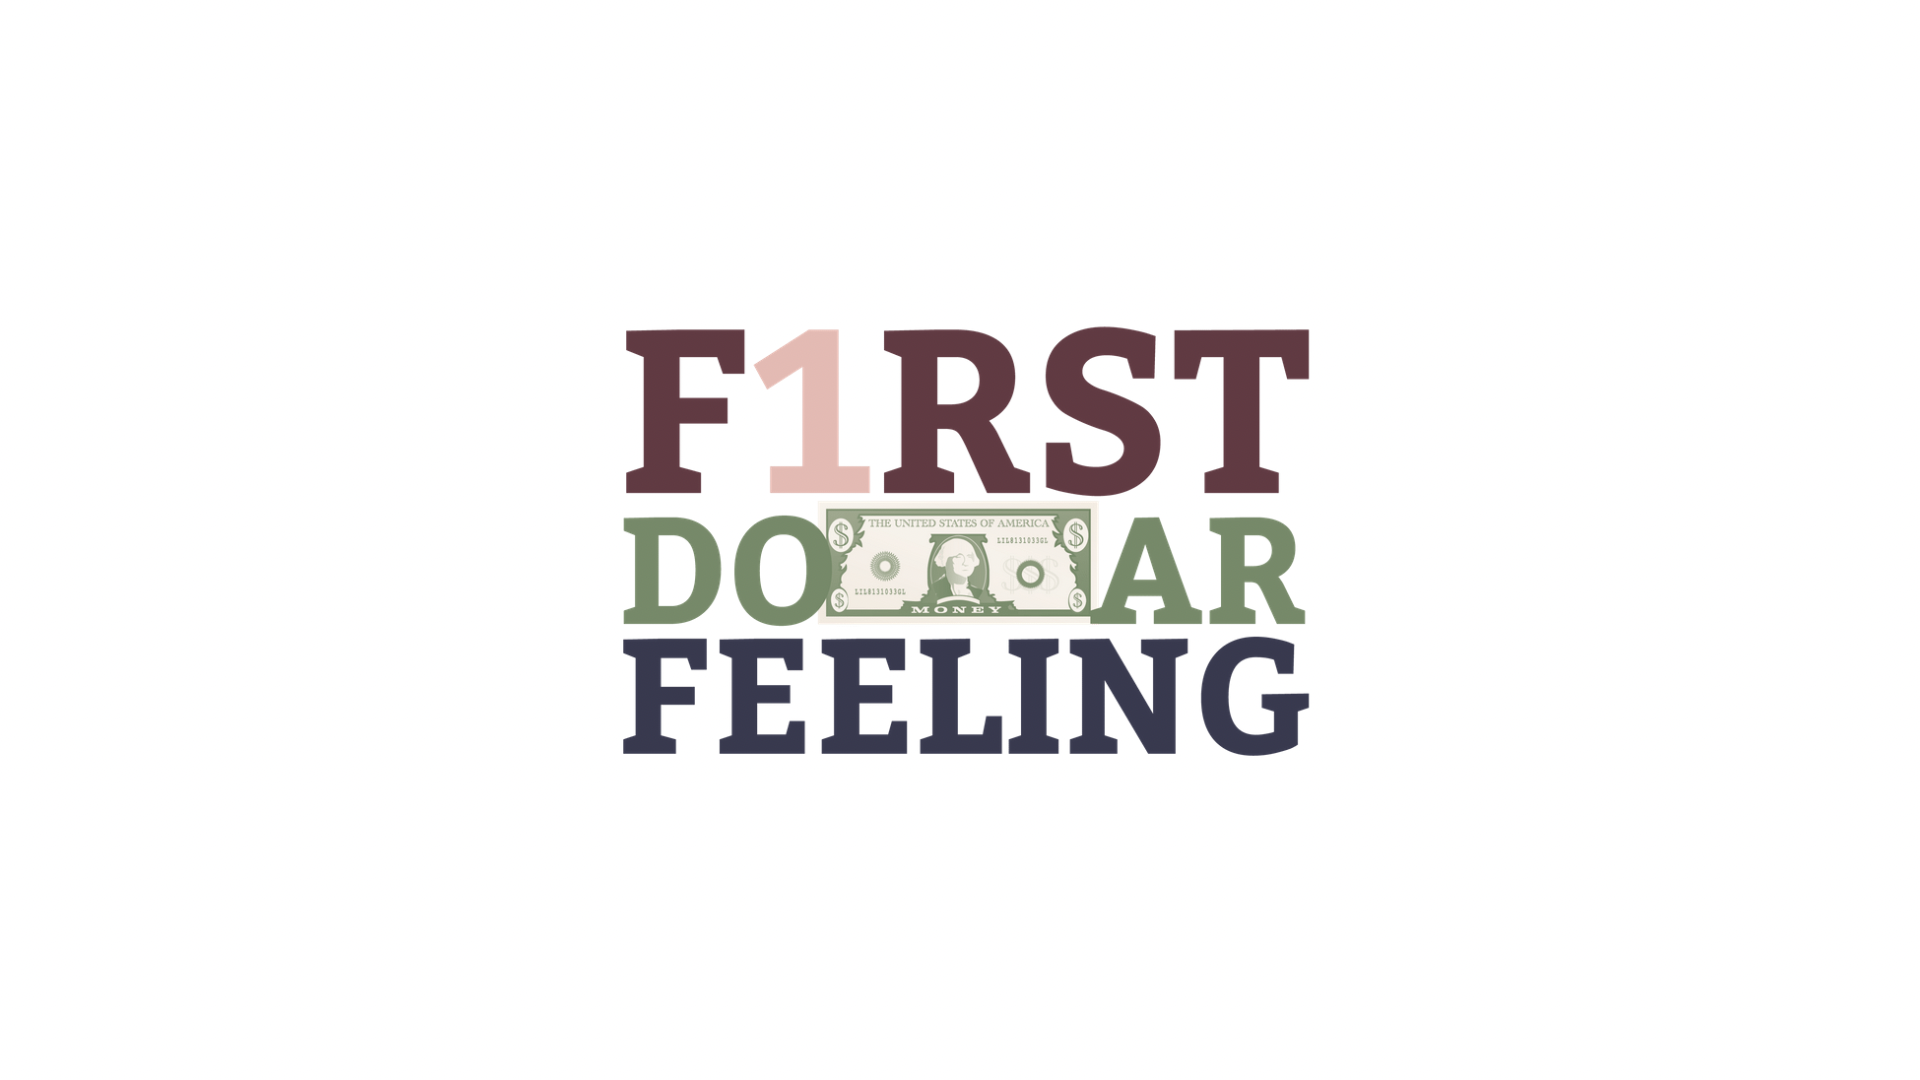 First Dollar Feeling